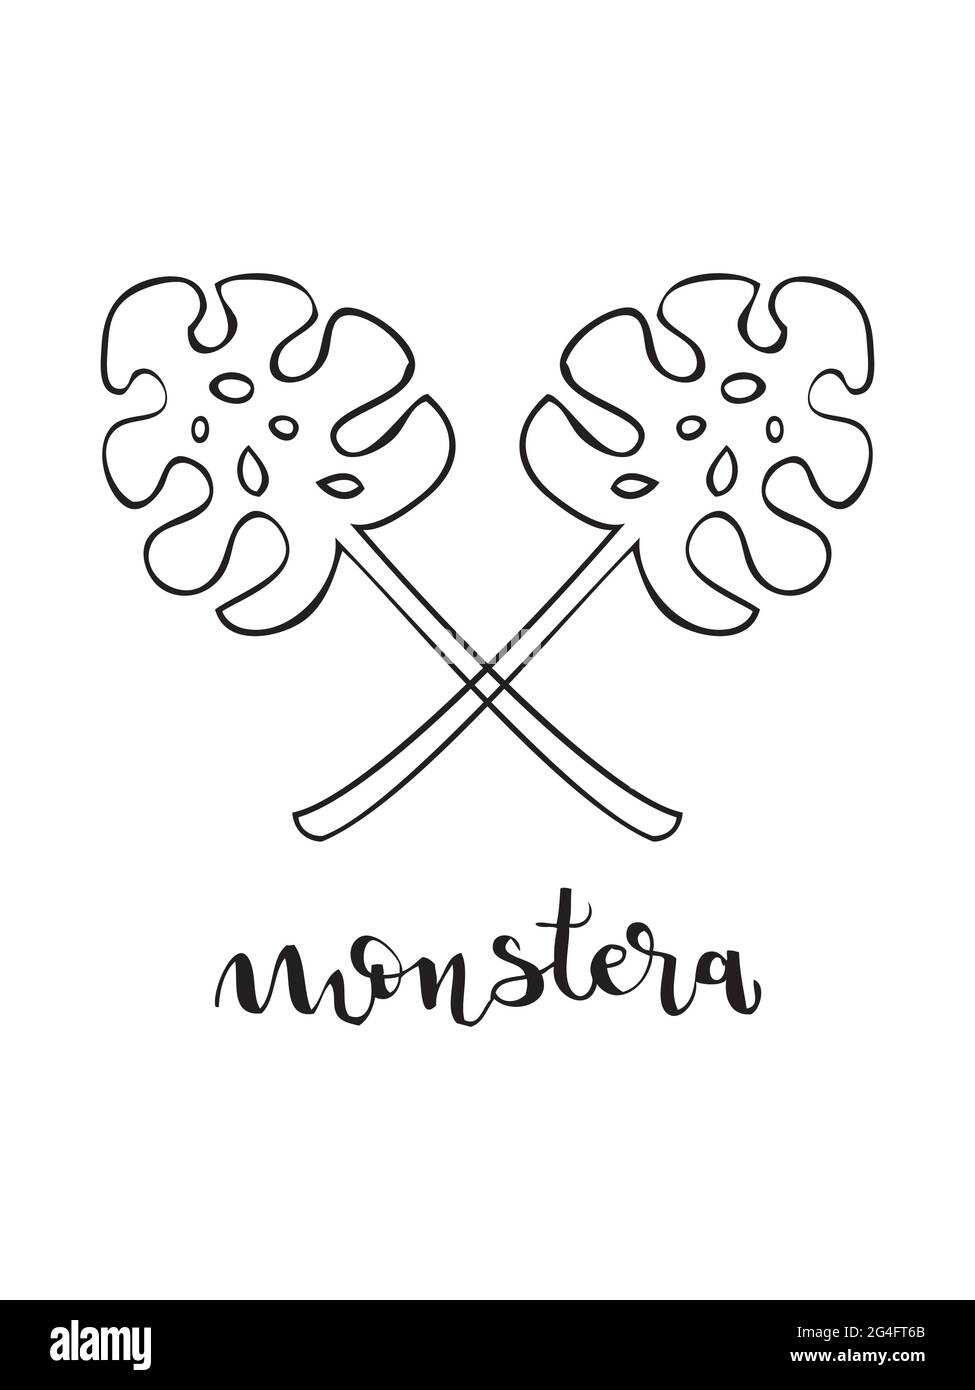 Monstera-Blatt und Schriftzug. Linearer Stil. Vektorgrafik, handgezeichneter Stil Stock Vektor